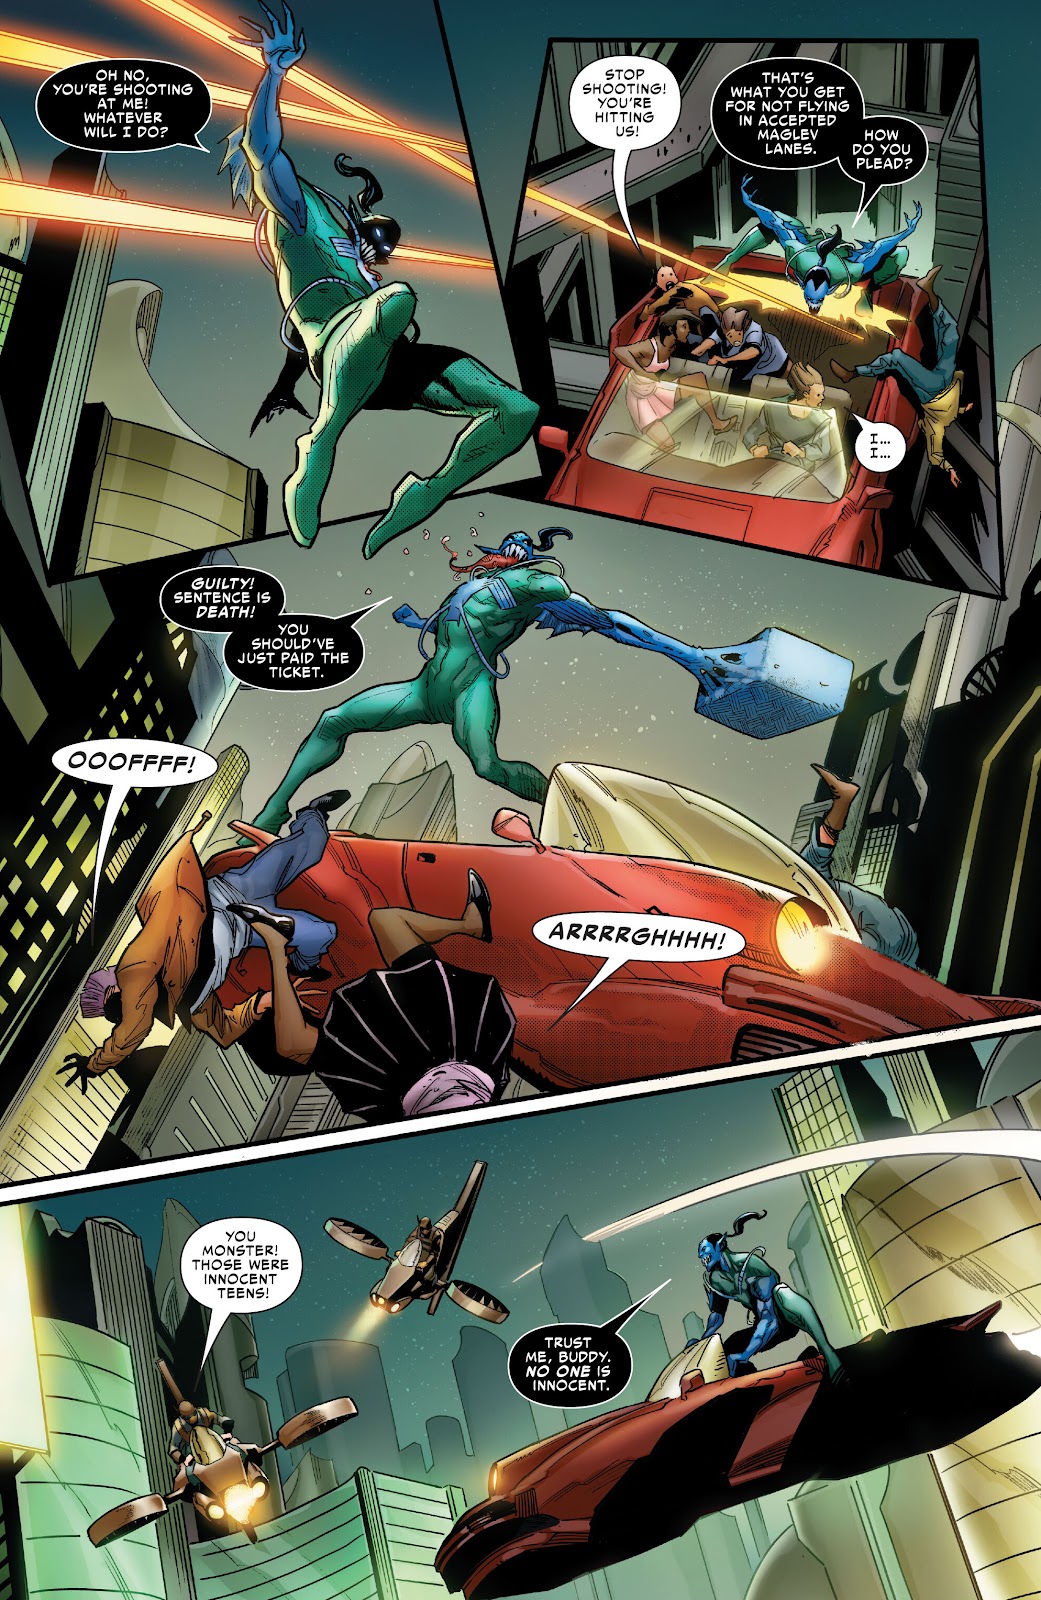 Symbiote Spider-Man 2099 issue 1 - Page 5